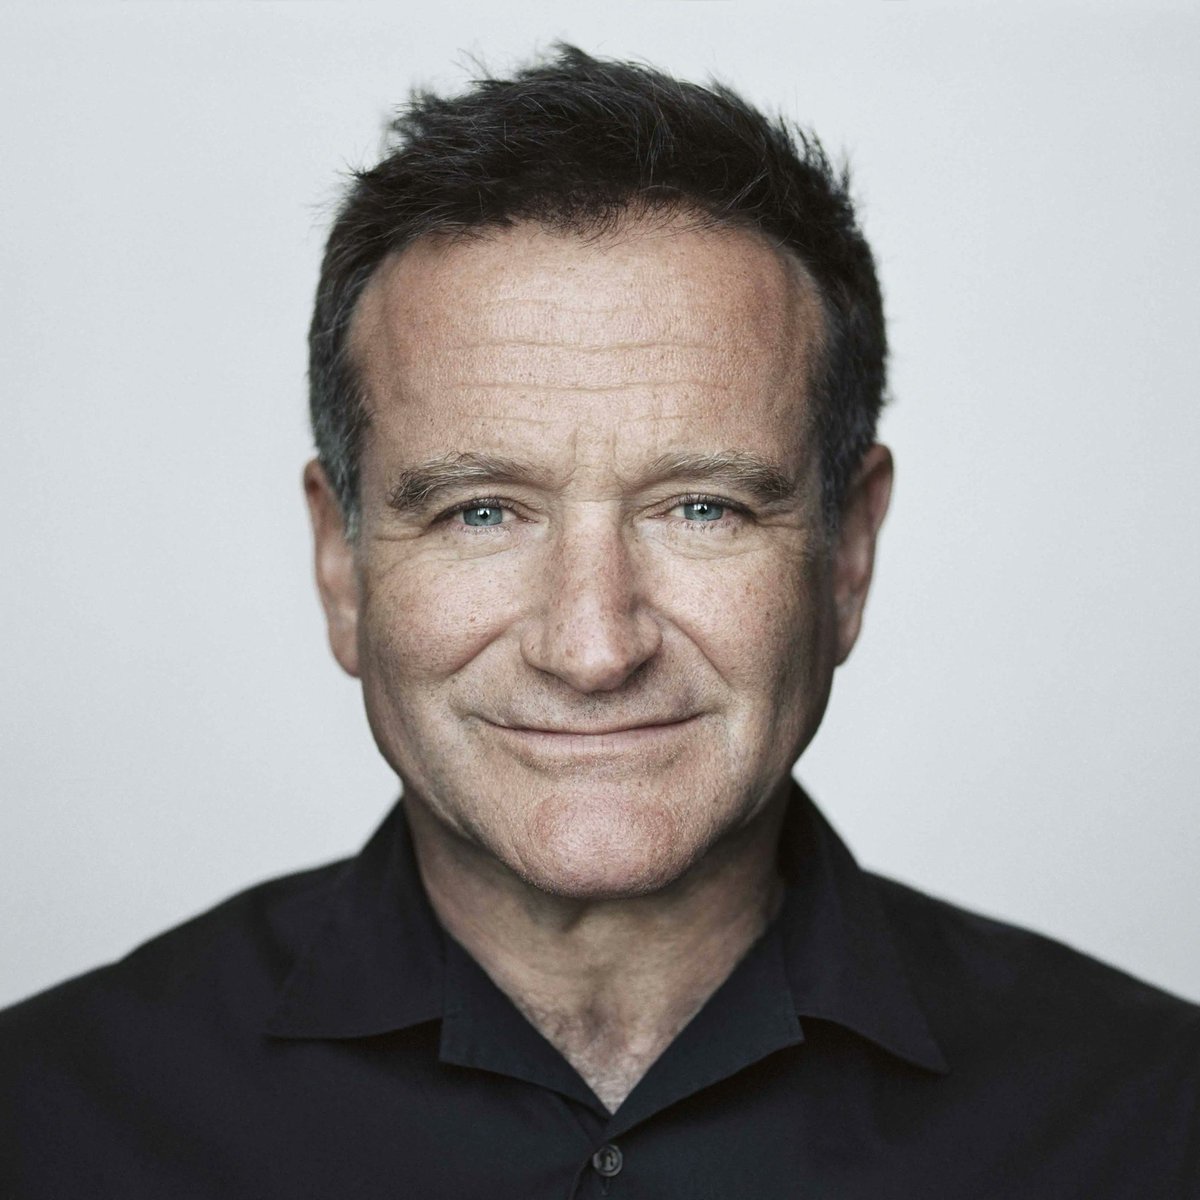 2. Robin Williams dijo una vez 'Creo que las personas más tristes siempre se esfuerzan al máximo por hacer feliz a la gente, porque saben lo que es sentirse absolutamente inútil y no quieren que nadie más se sienta así'